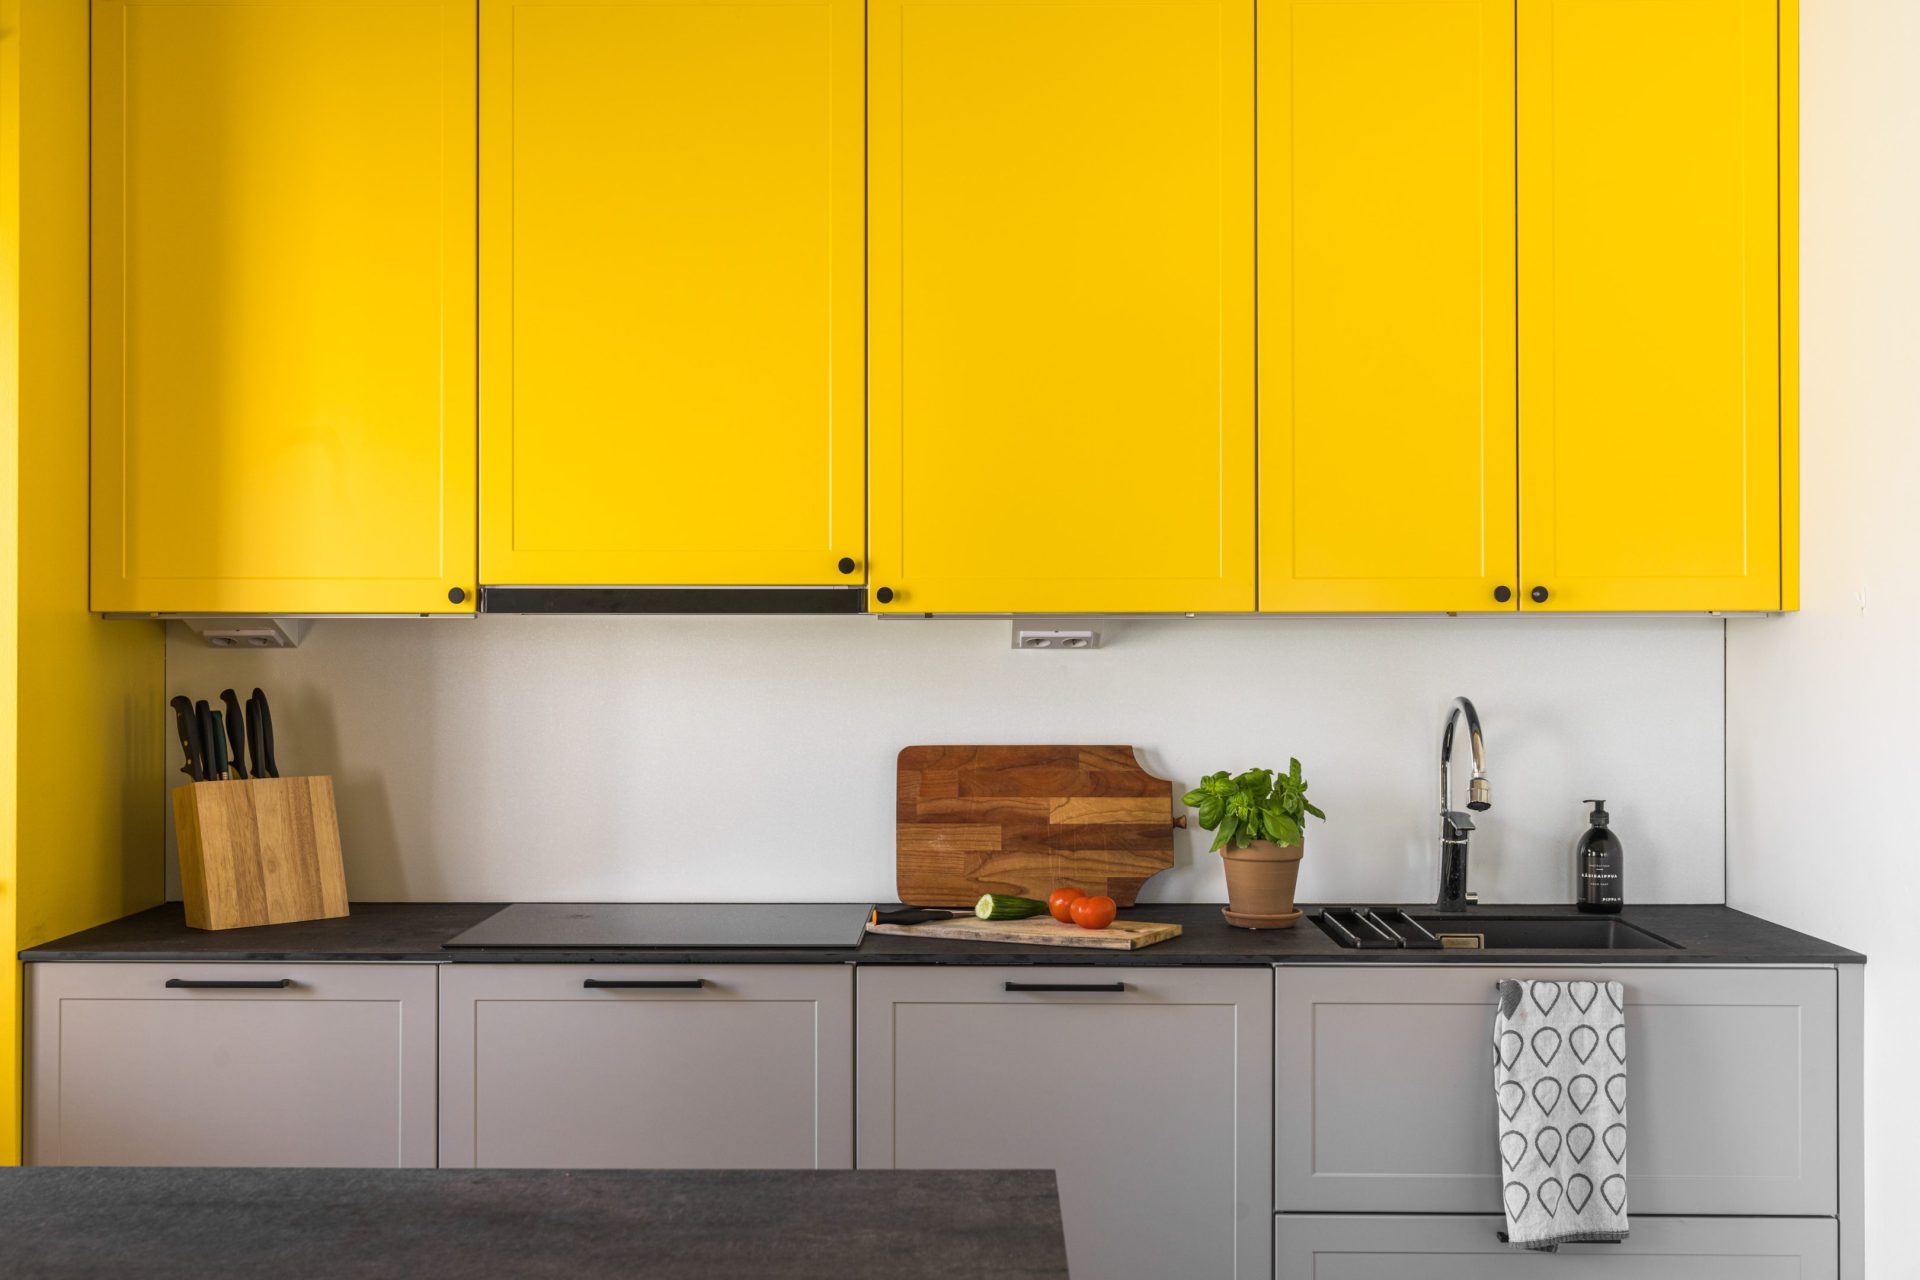 Tikkurilan värikartasta valittu keltainen ja harmaa yhdistyvät kaapistoissa.